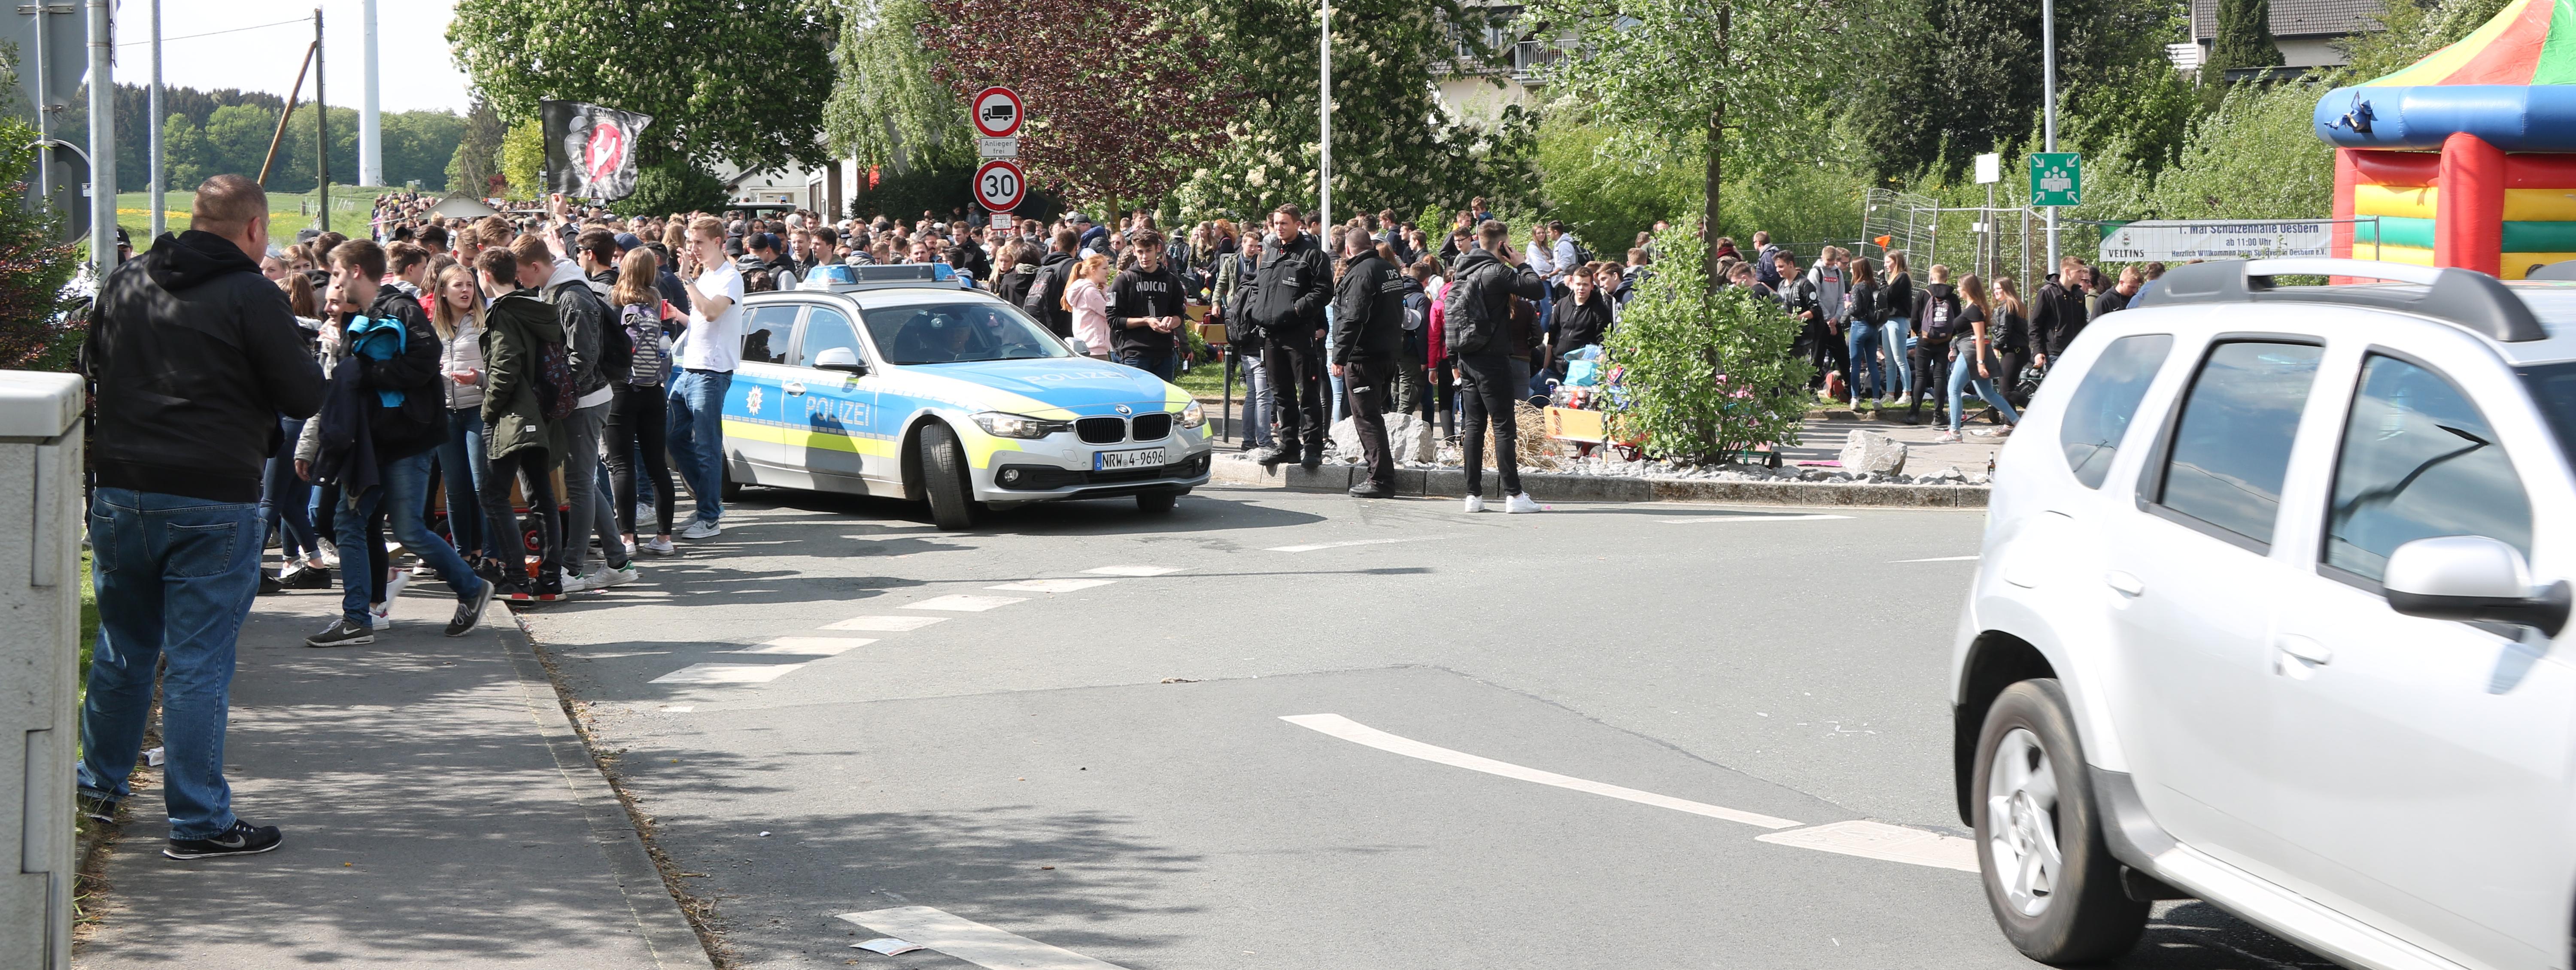 hunderte Jugendliche habe sich am Kreisverkehr in Oesbern versammelt und feiern den ersten Mai. In Mitten der Gruppe steht ein Polizeiauto.